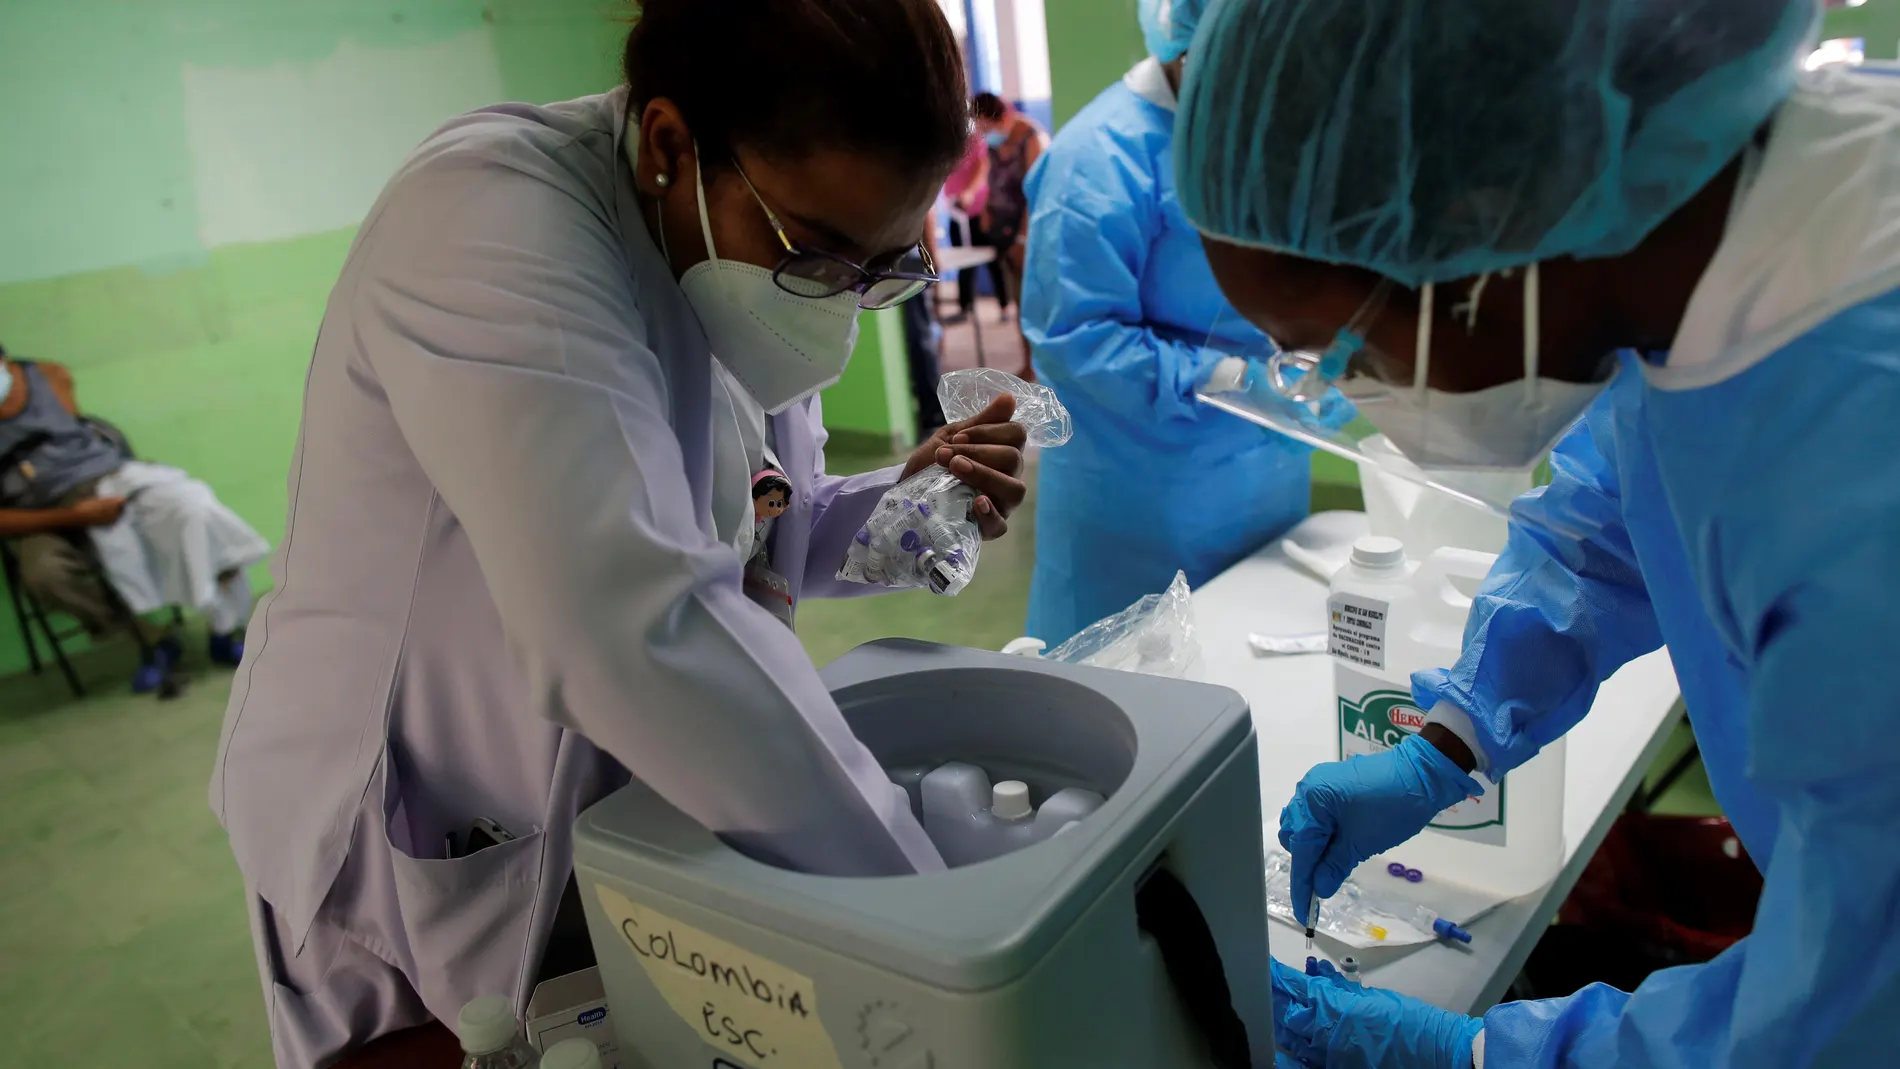 AME7809. SAN MIGUELITO (PANAMÁ), 05/04/2021.- Personal médico prepara vacunas Pfizer contra la covid-19 para aplicar segundas dosis a la población hoy, en la escuela república de Colombia, en San Miguelito (Panamá). Panamá, con 356.377 casos de la covid-19 y 6.135 muertes por la enfermedad, ha contratado la compra de 7,2 millones de dosis de vacuna, 5 millones de Pfizer y el resto de AstraZeneca, el mecanismo Covax, y ha entablado conversaciones con desarrolladores rusos y chinos para acceder a los preparados de Sputik V y Sinovac. EFE/ Bienvenido Velasco